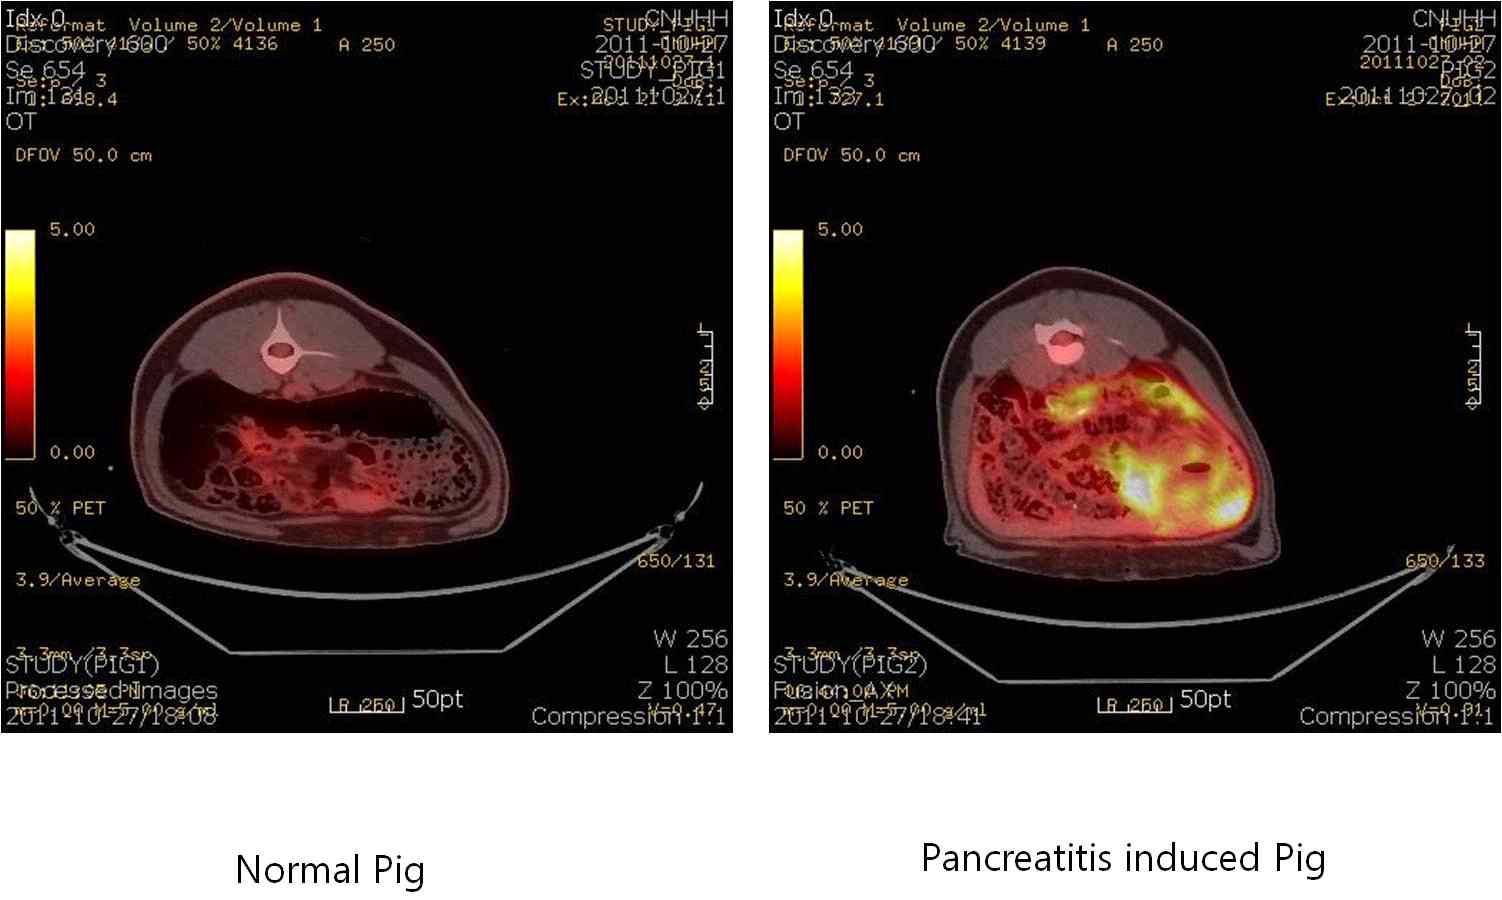 정상 미니돼지와 췌장염 유발 미니돼지에서 PET-CT의 영상에서 횡단에 의한 영상